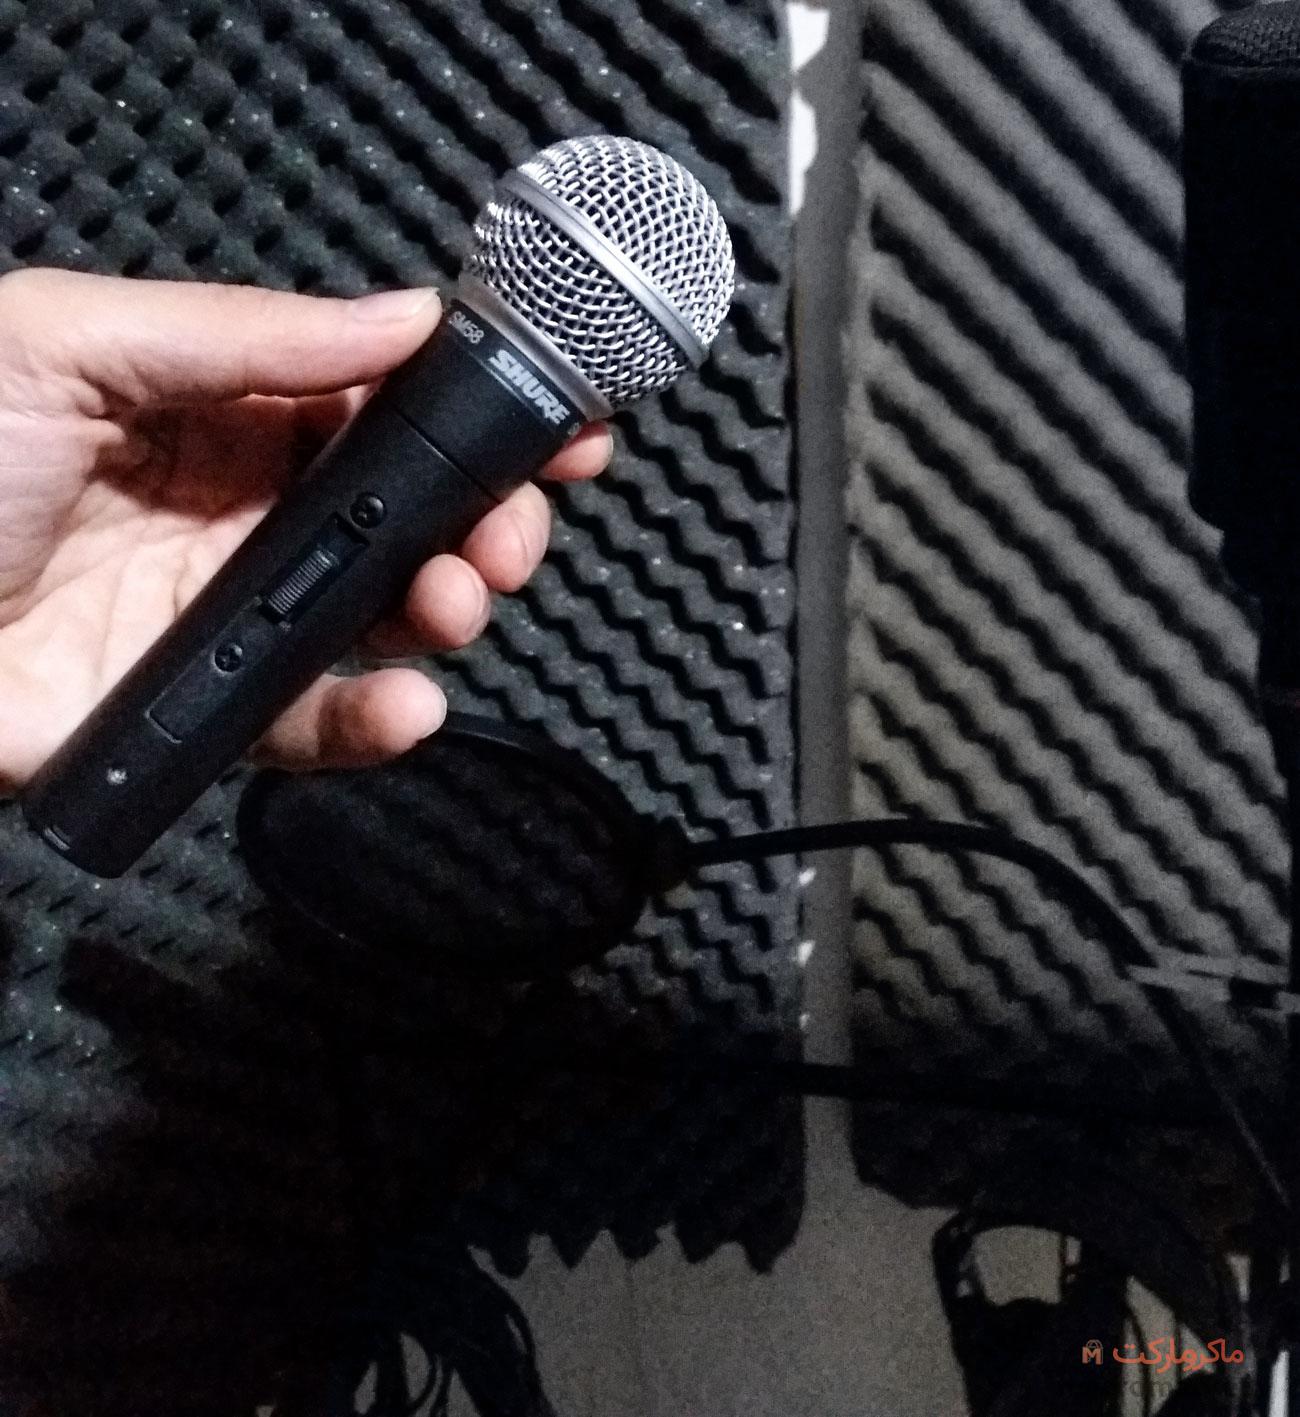 میکروفون شور SM58 اصل آمریکا - یکی از بهترین و معروف ترین میکروفن های داینامیک دنیا ، قابل استفاده برای رکورد